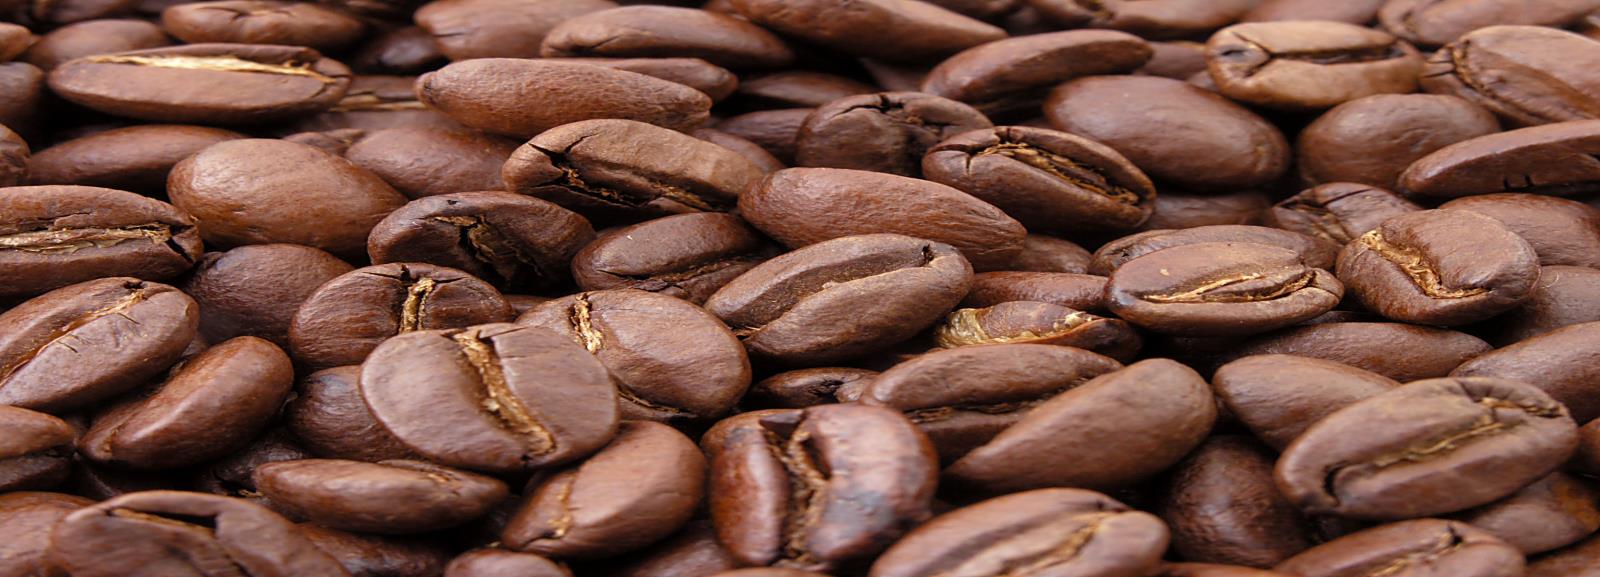 LA PRODUCCIÓN DE CAFÉ EN COLOMBIA 214 Resumen: La producción de café en Colombia durante 214 ha sido favorable, gracias al proceso de renovación de cafetales, se recuperó el nivel de los diez